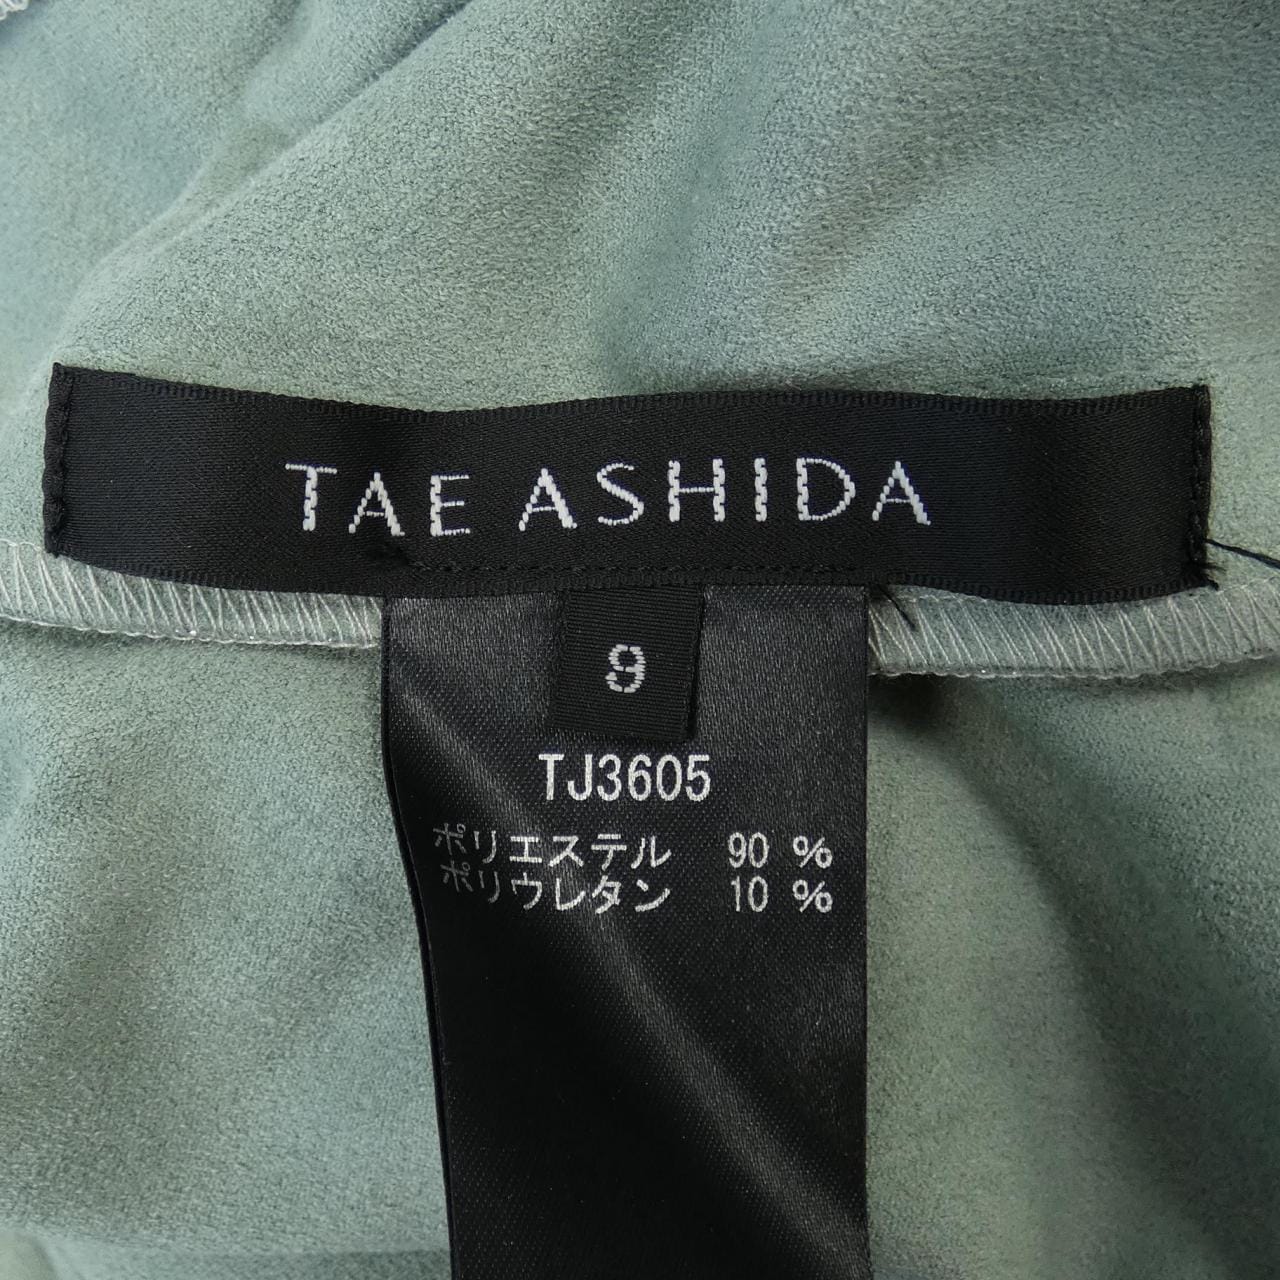 TAE ASHIDA jacket